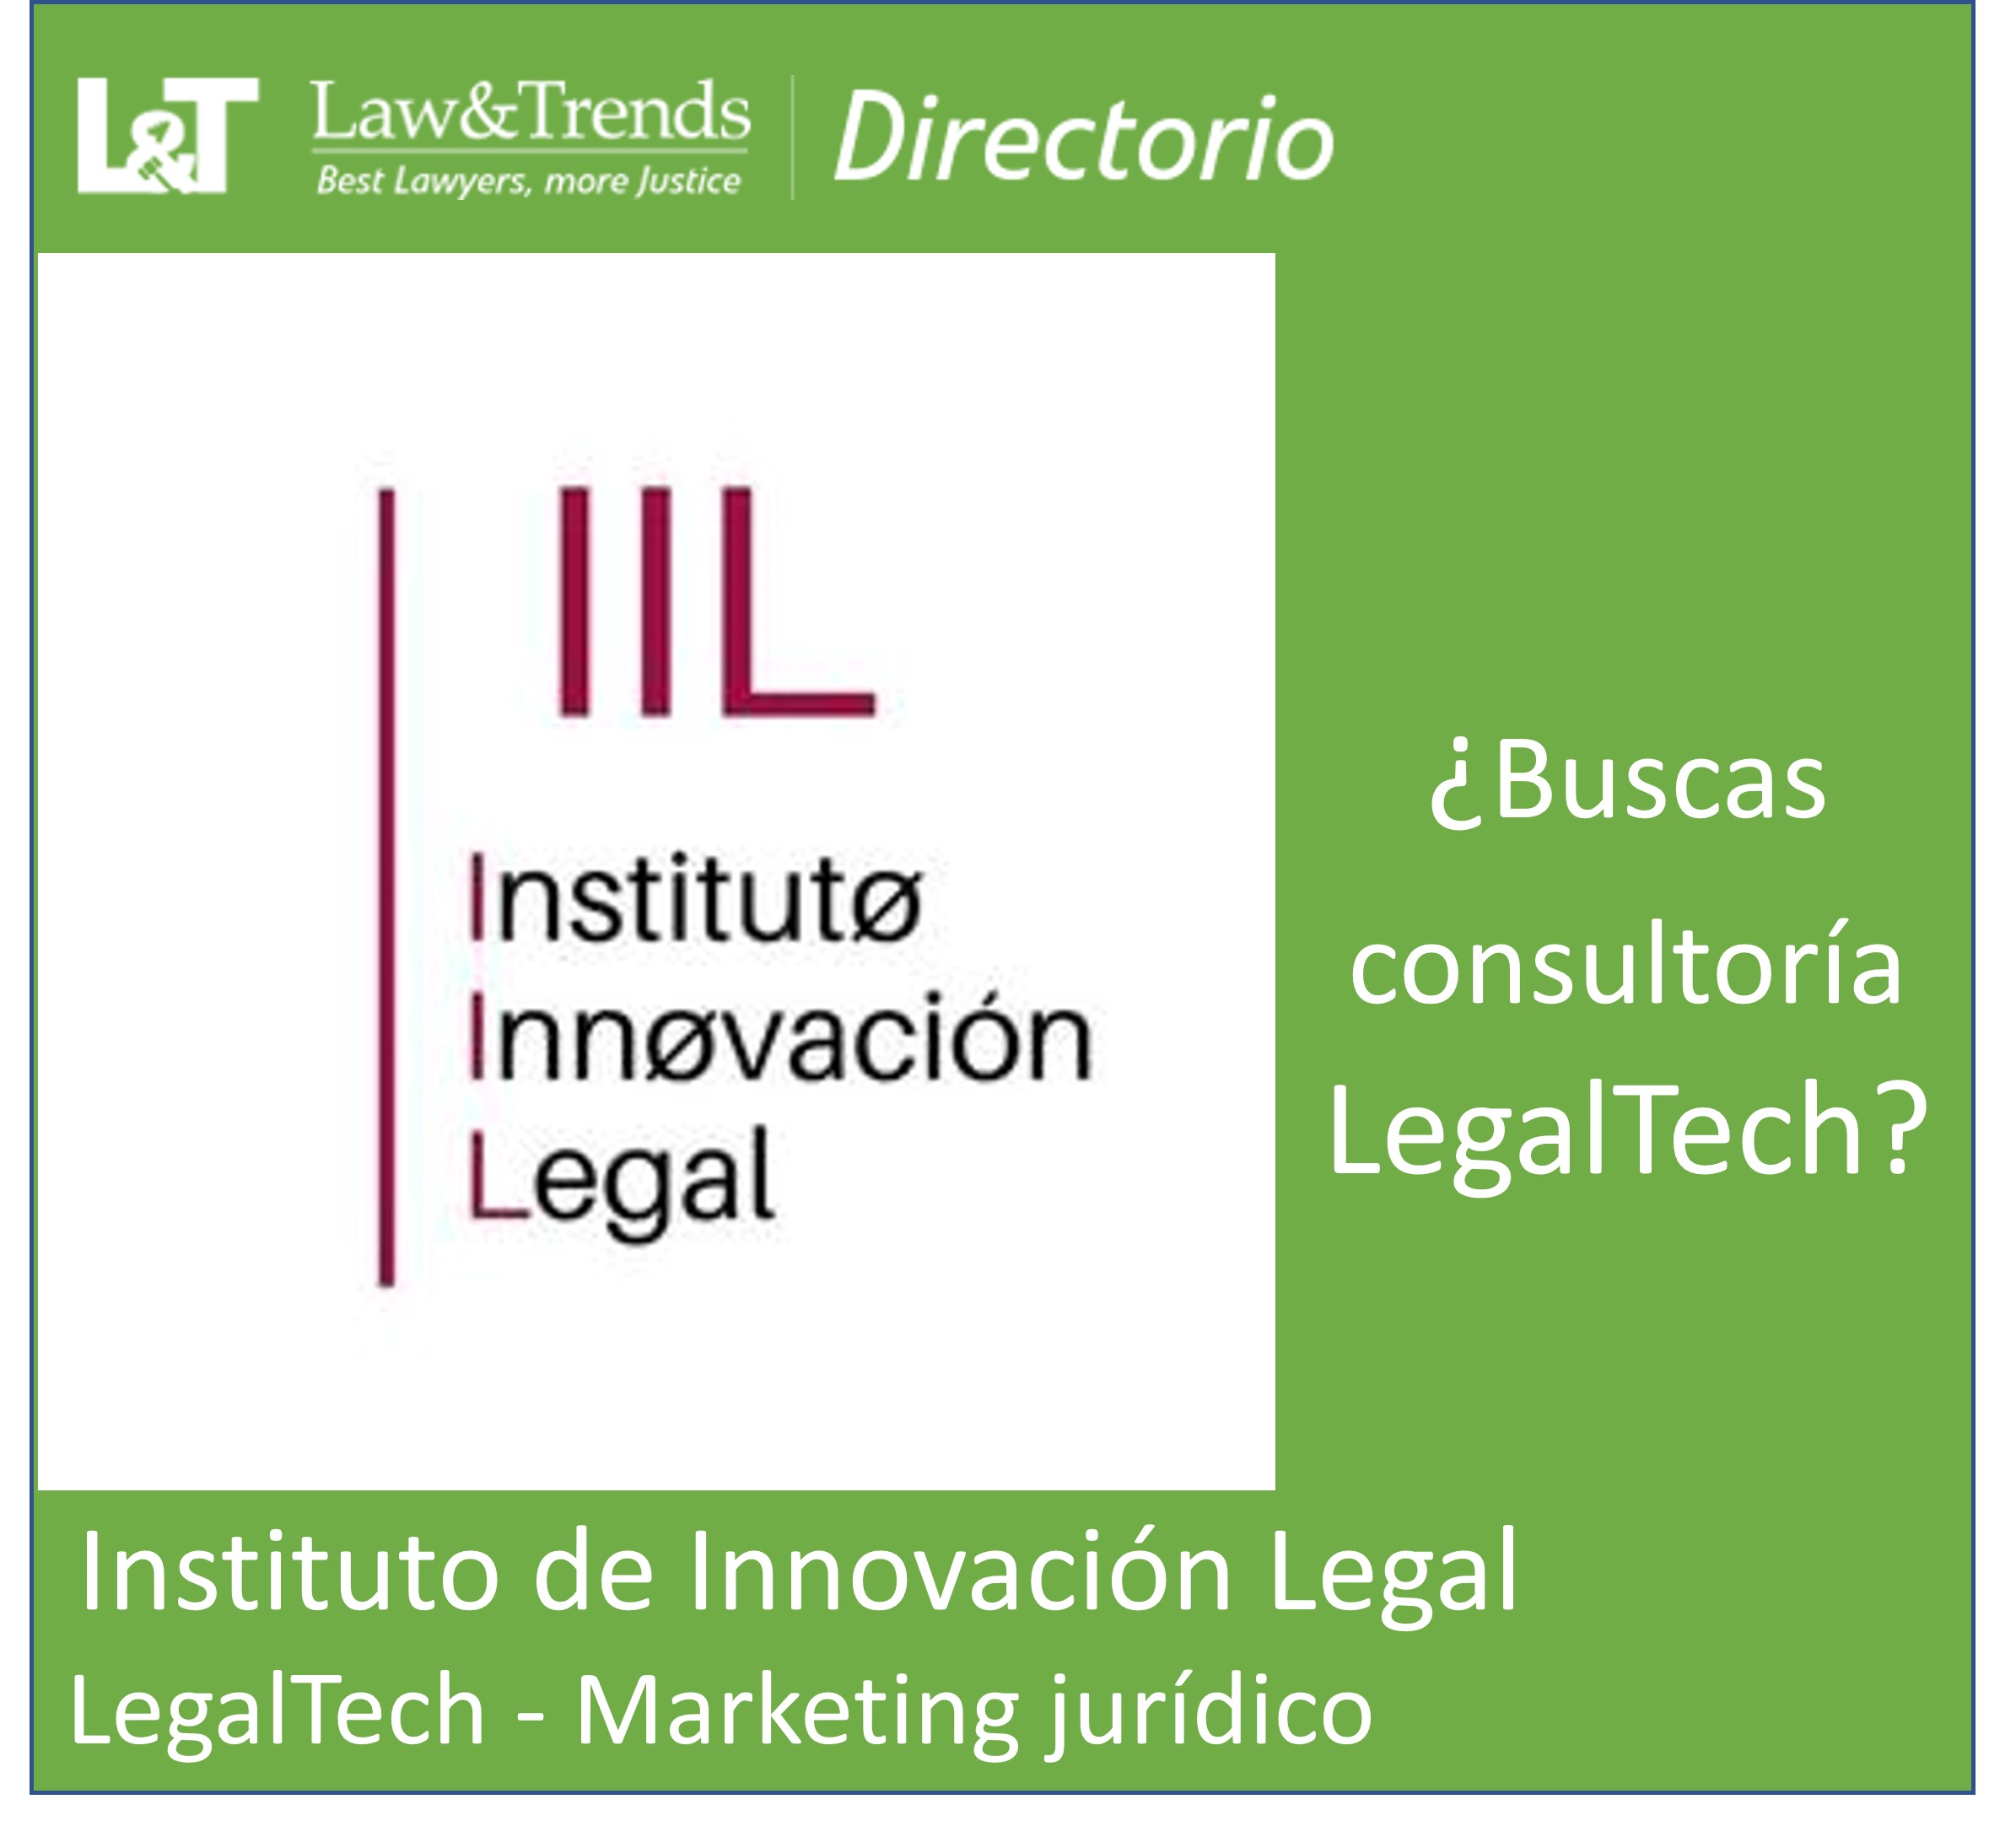 Instituto de Innovación Jurídica abogados madrid
